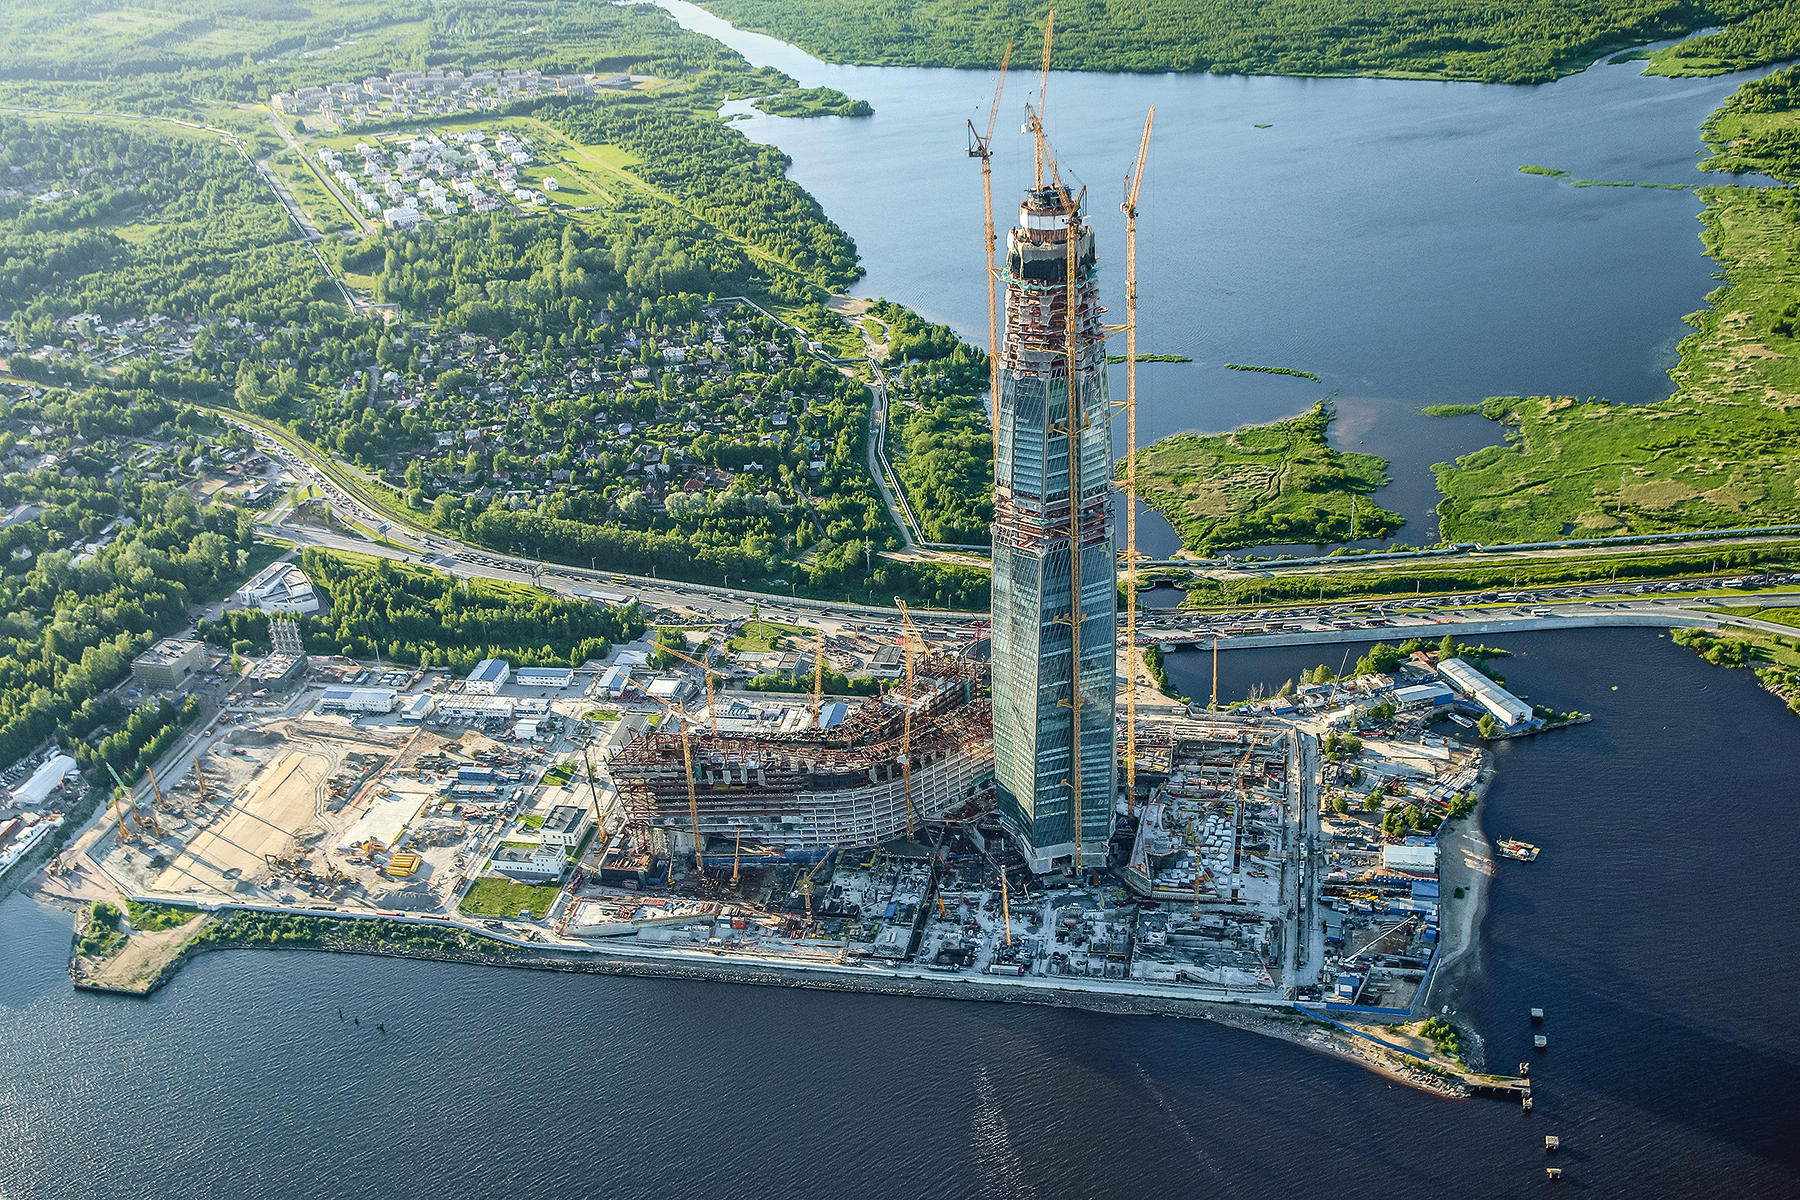 V Petrohradě se staví zatím nejvyšší budova v Evropě. Jedná se o centrálu energetického koncernu Gazprom. Neobyčejná multifunkční budova, kterou bude doplňovat amfiteátr a rozsáhlé parky, bude 462 m vysoká.